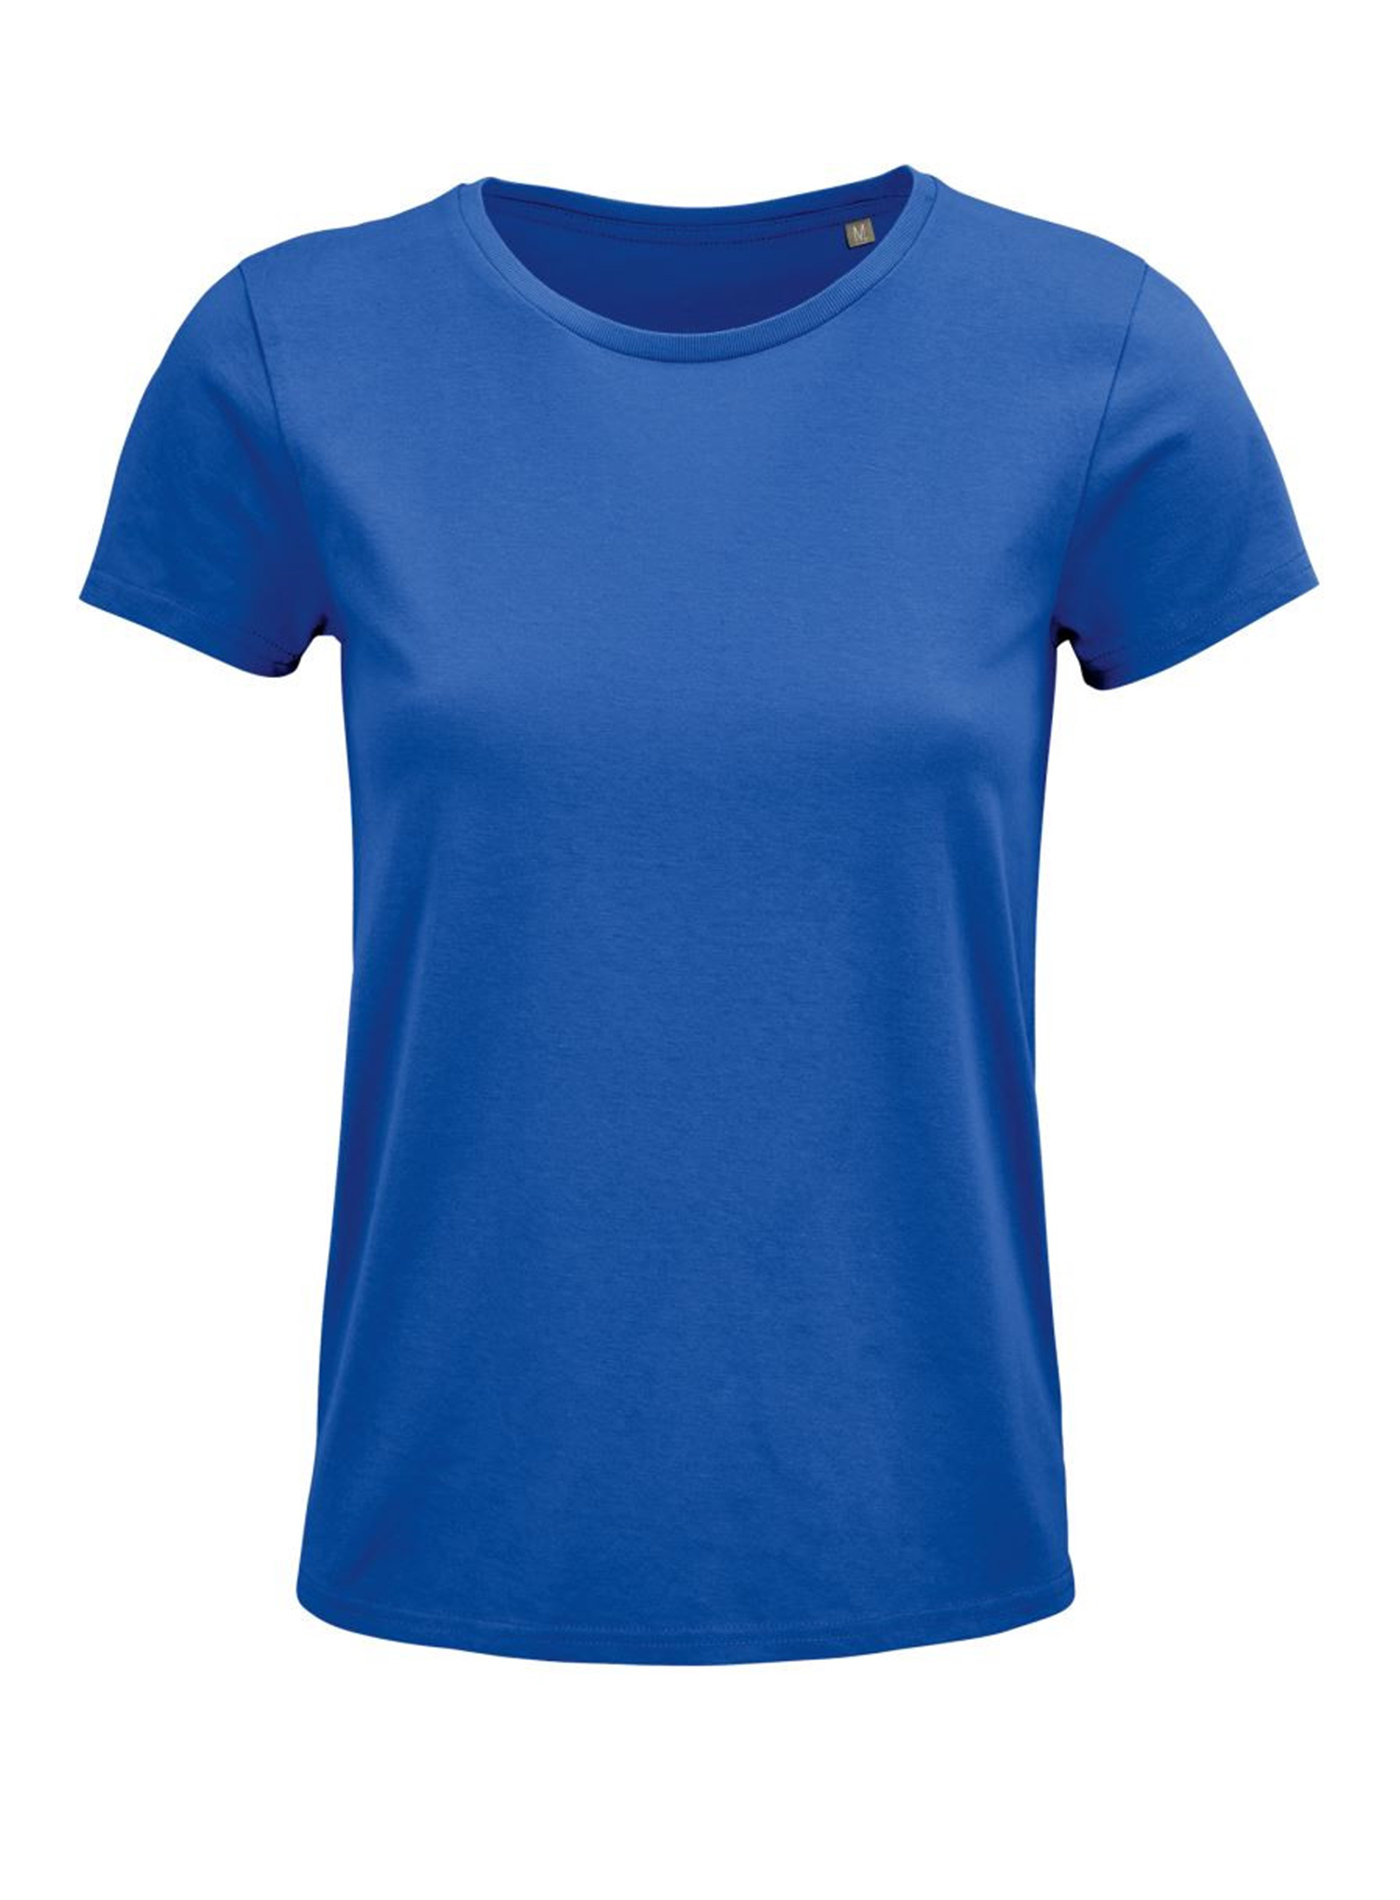 Dámské tričko SOL'S Crusader - královská modrá M